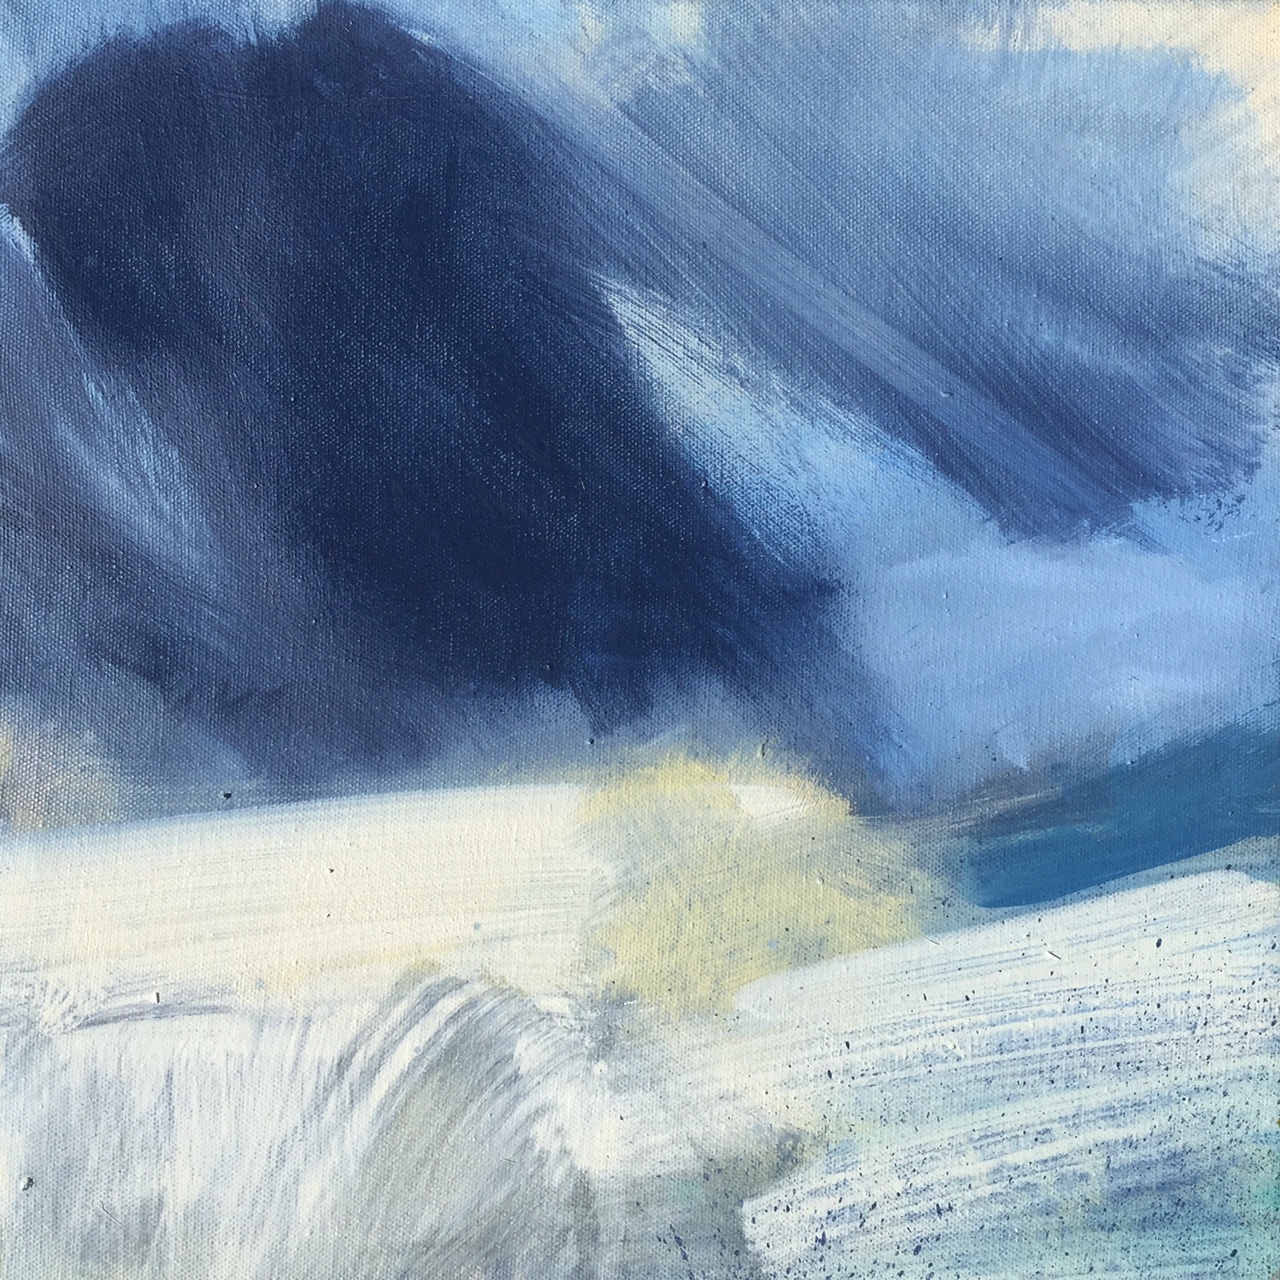 Leah-Beggs-2015-Oil-on-Canvas-33-x-33-cm-LIGHT-BREAKS-THROUGH.jpg